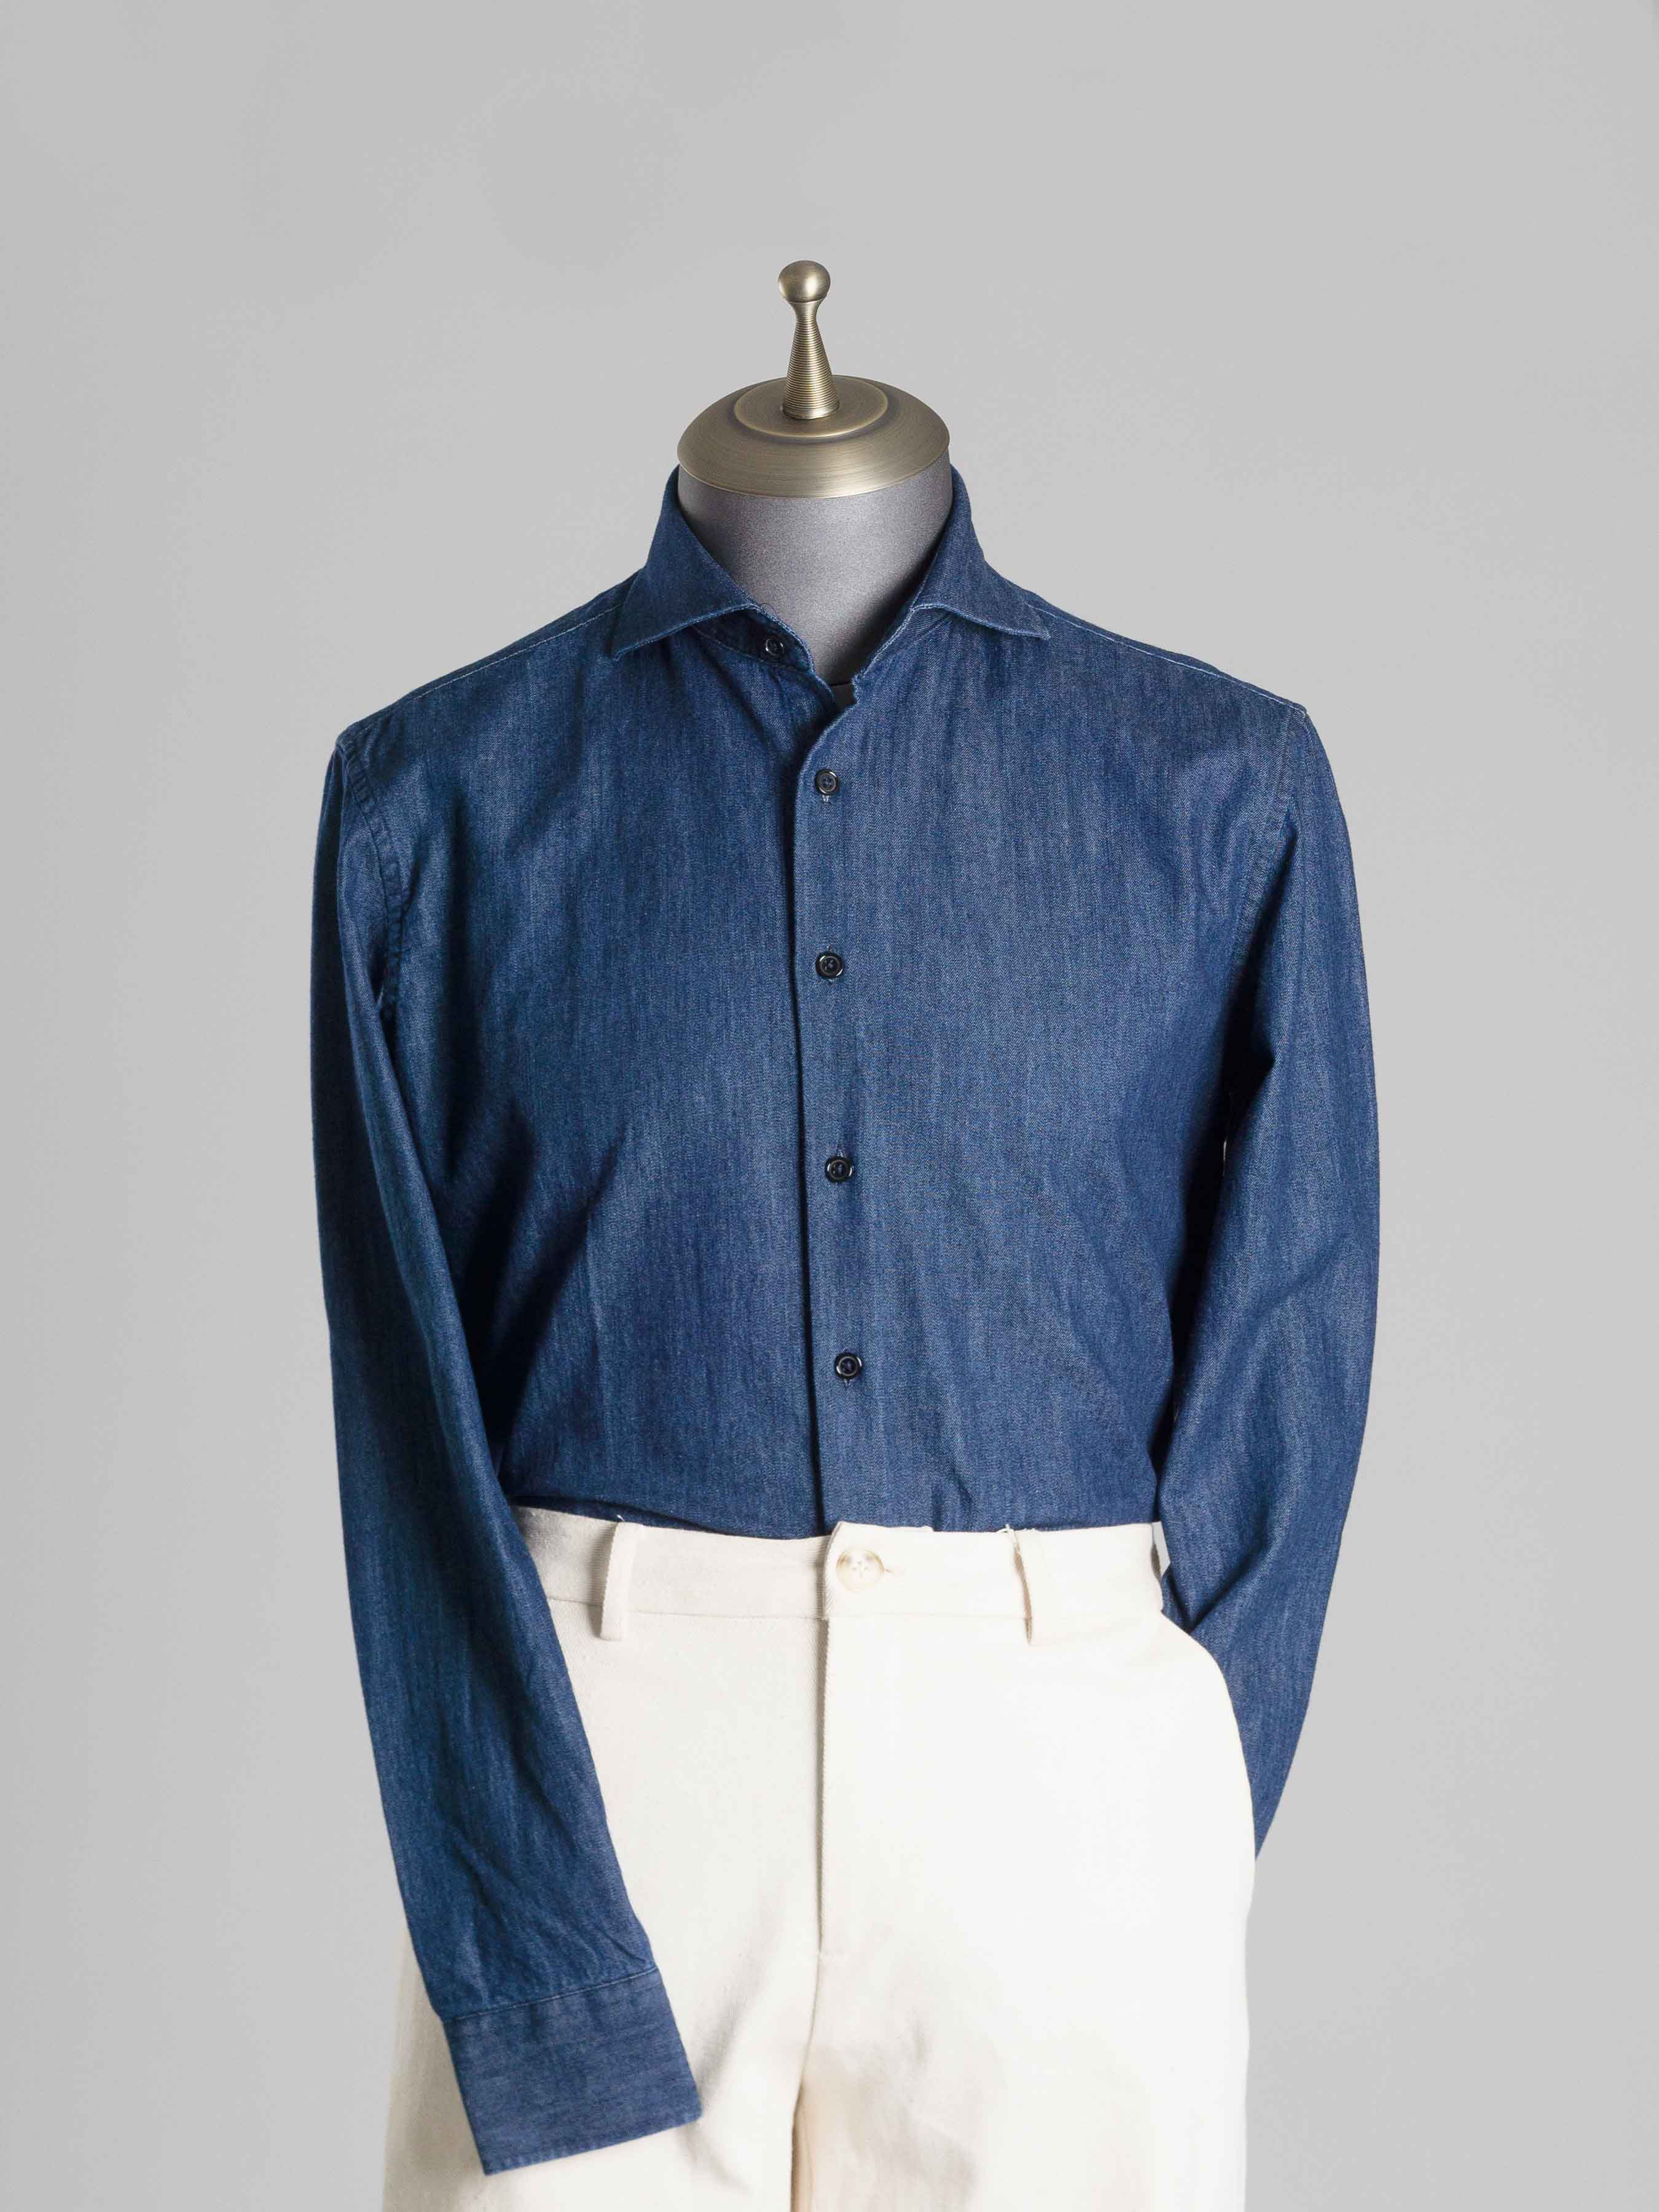 Chambray Shirt - Dark Blue Windsor Collar